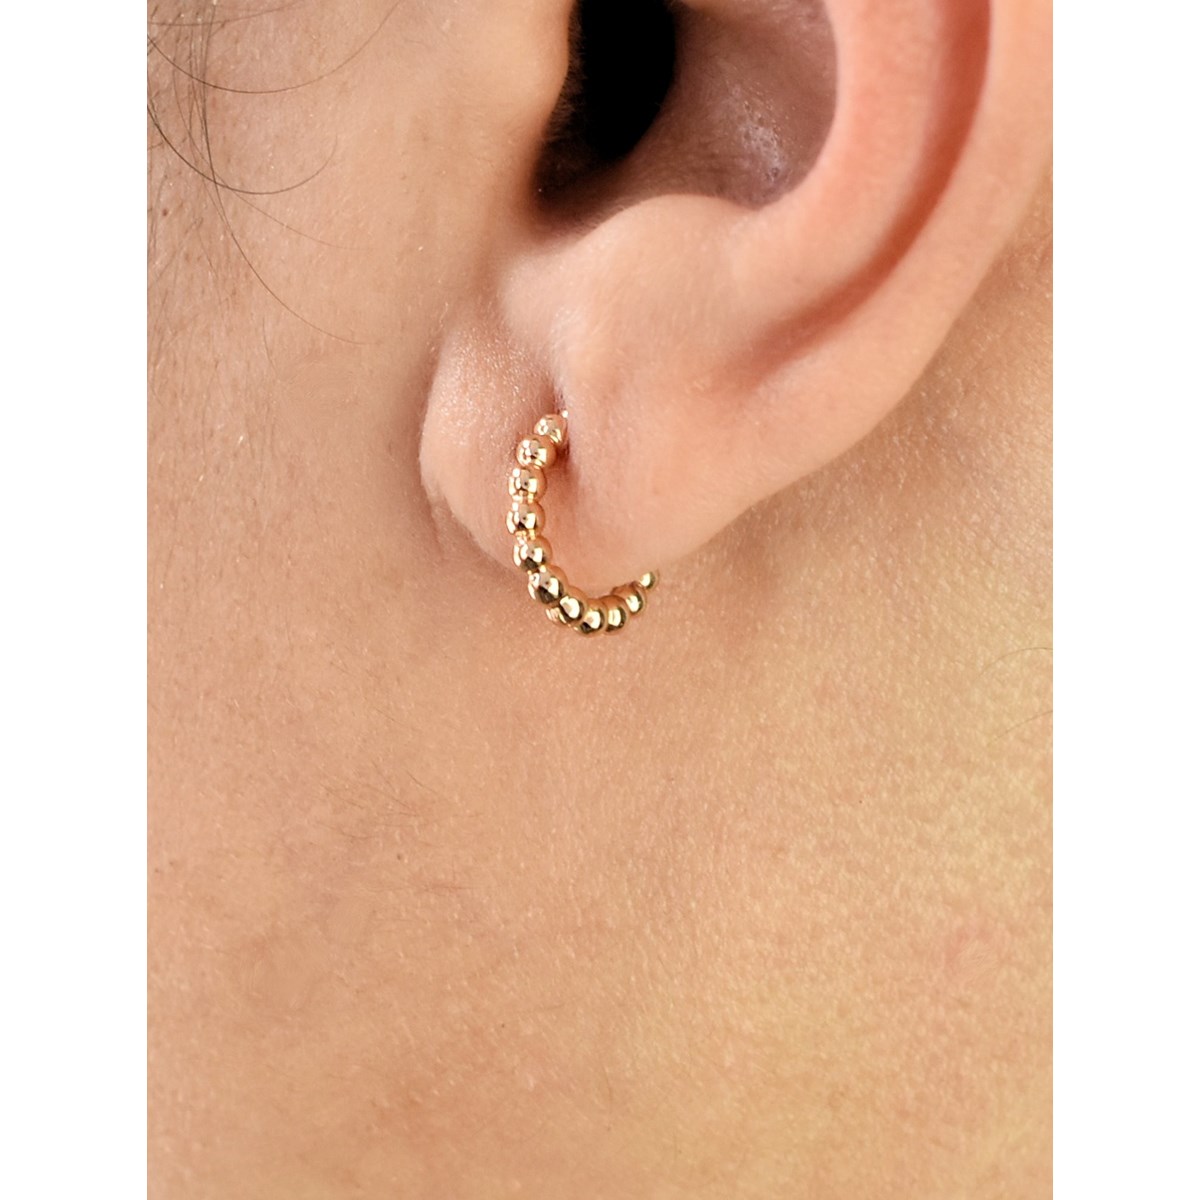 Boucles d'oreilles Créoles suite de boules rondes Plaqué or 750 3 microns - vue 2